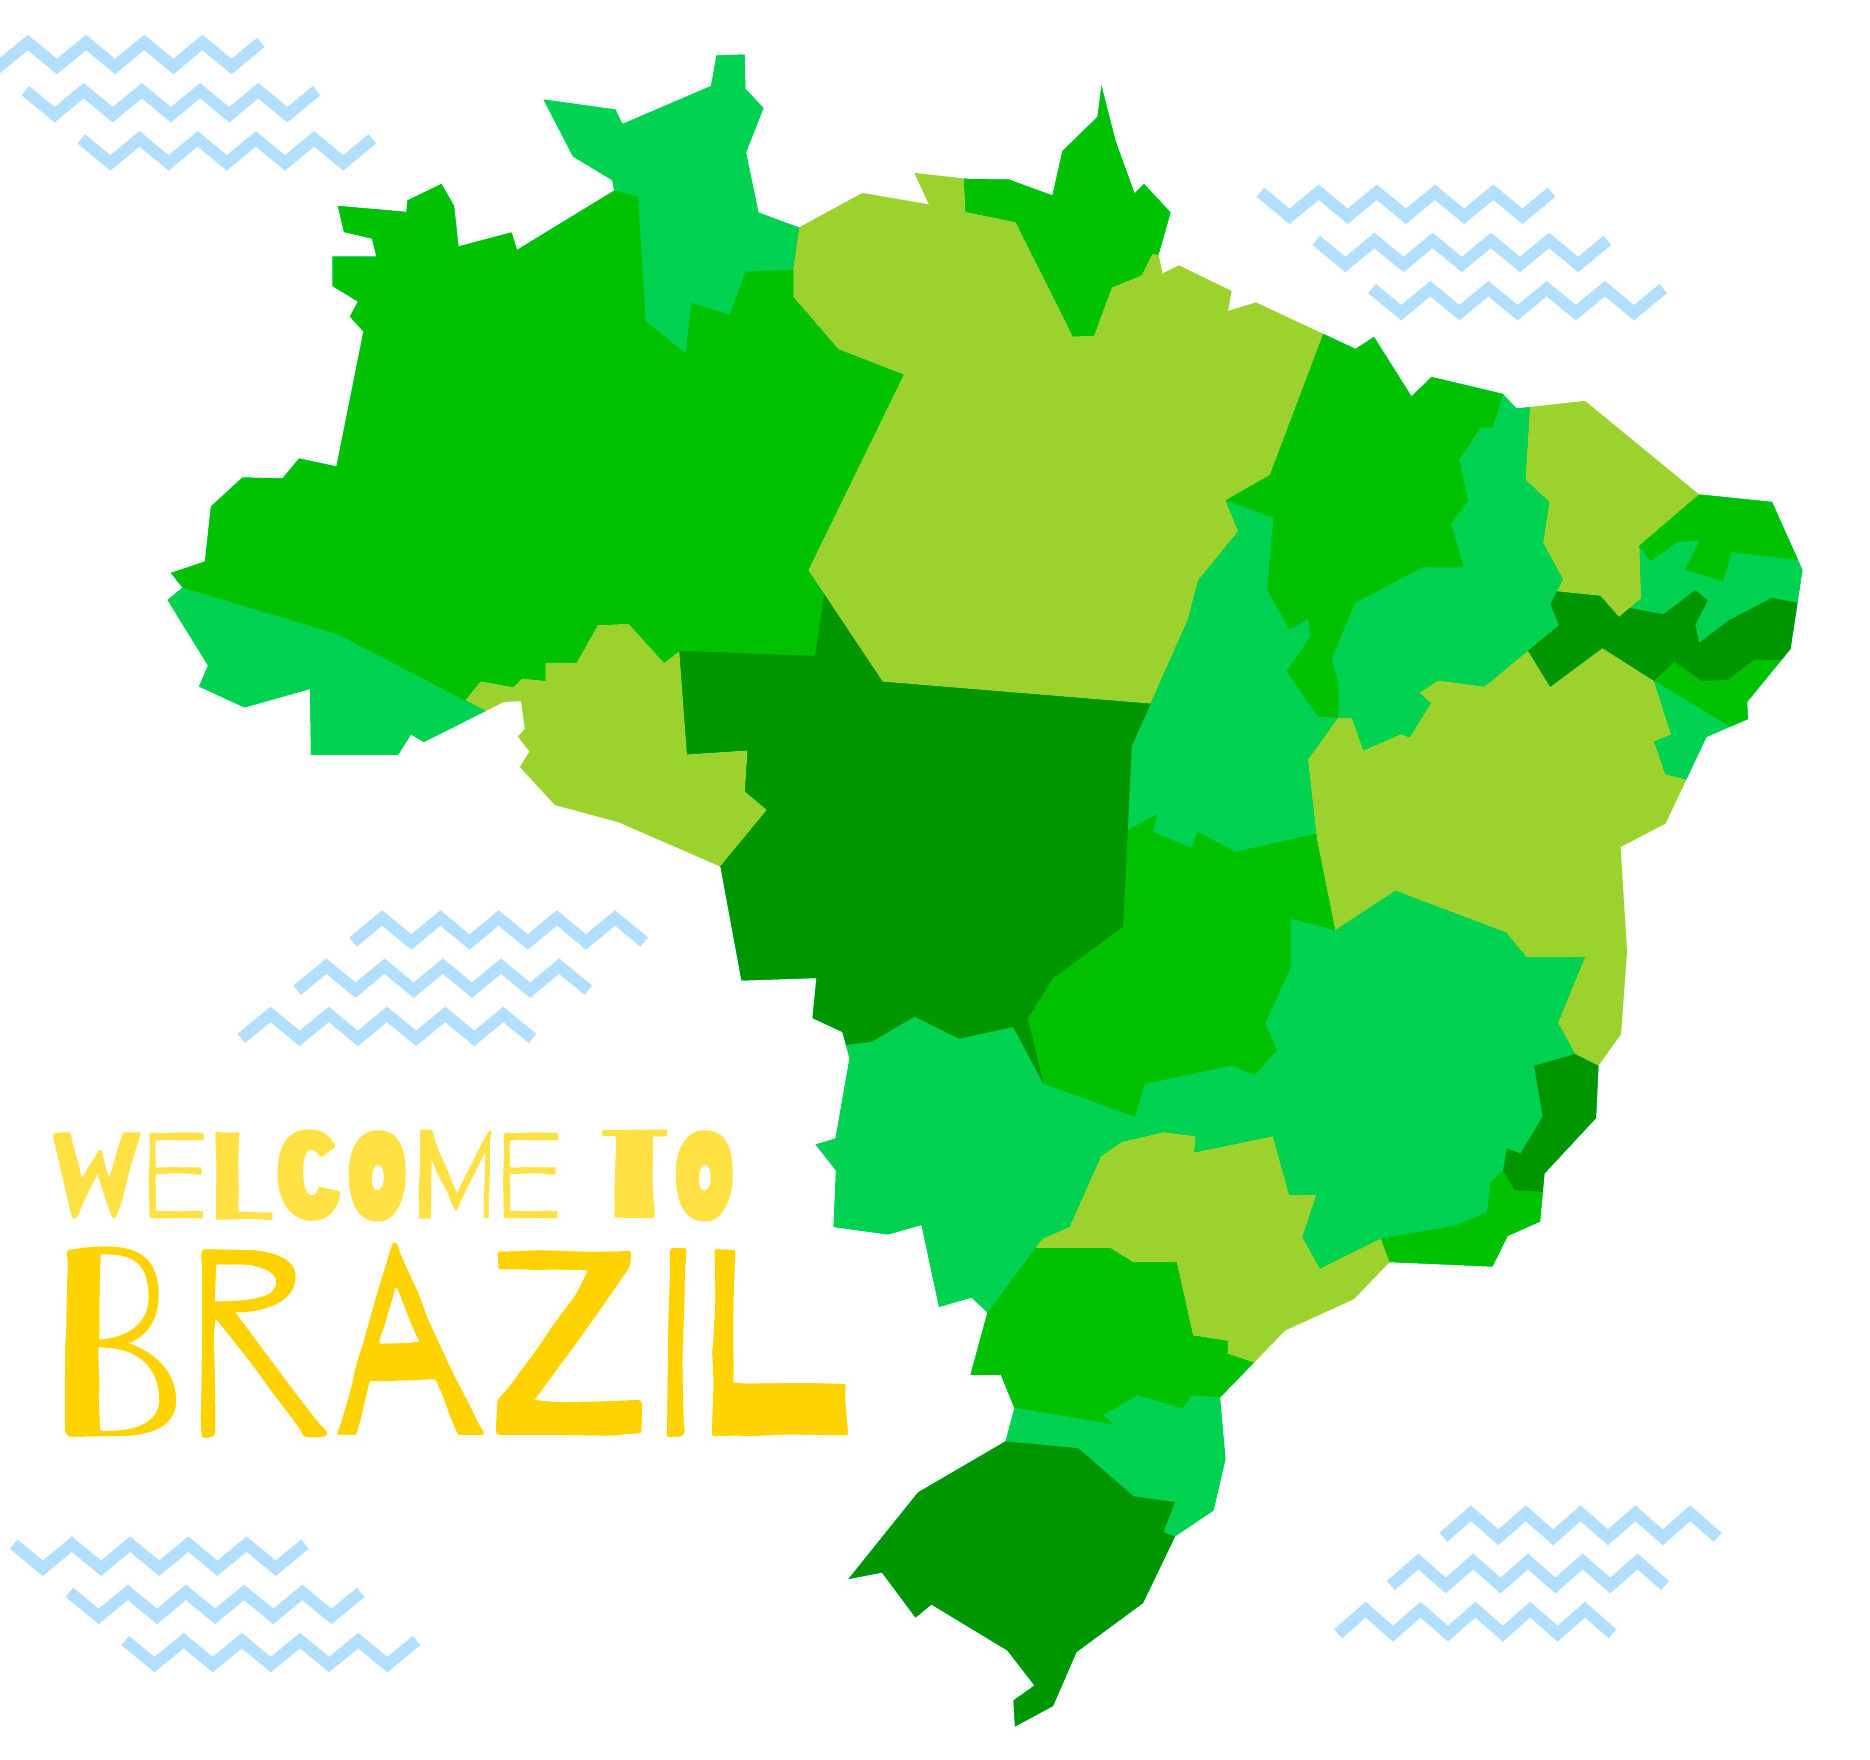 Mapa das gírias do Brasil : r/brasil